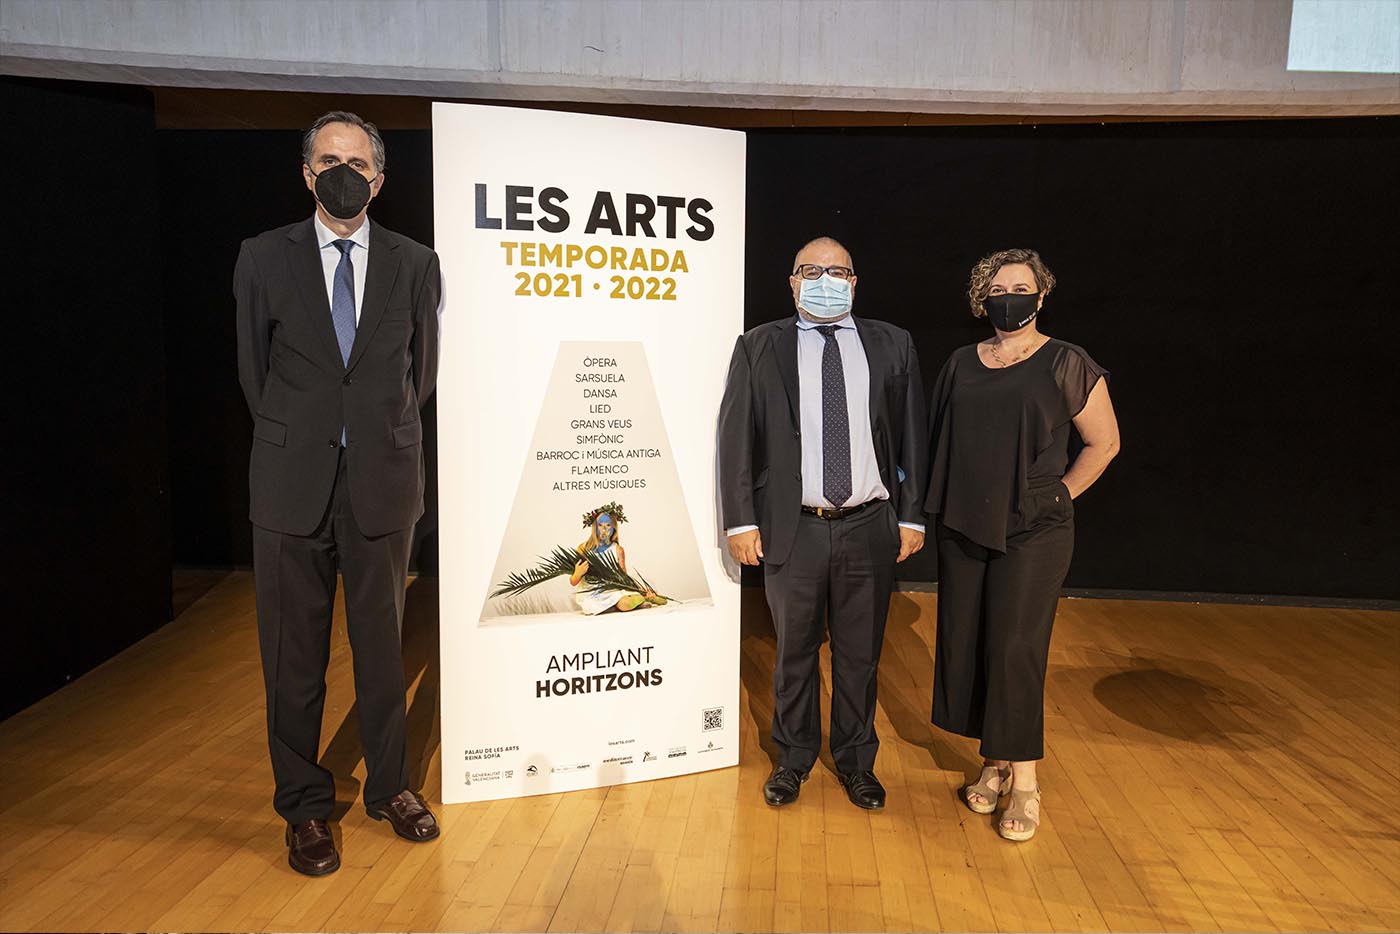 Les Arts propone un viaje por ocho siglos música su 2021-2022 - Les Arts